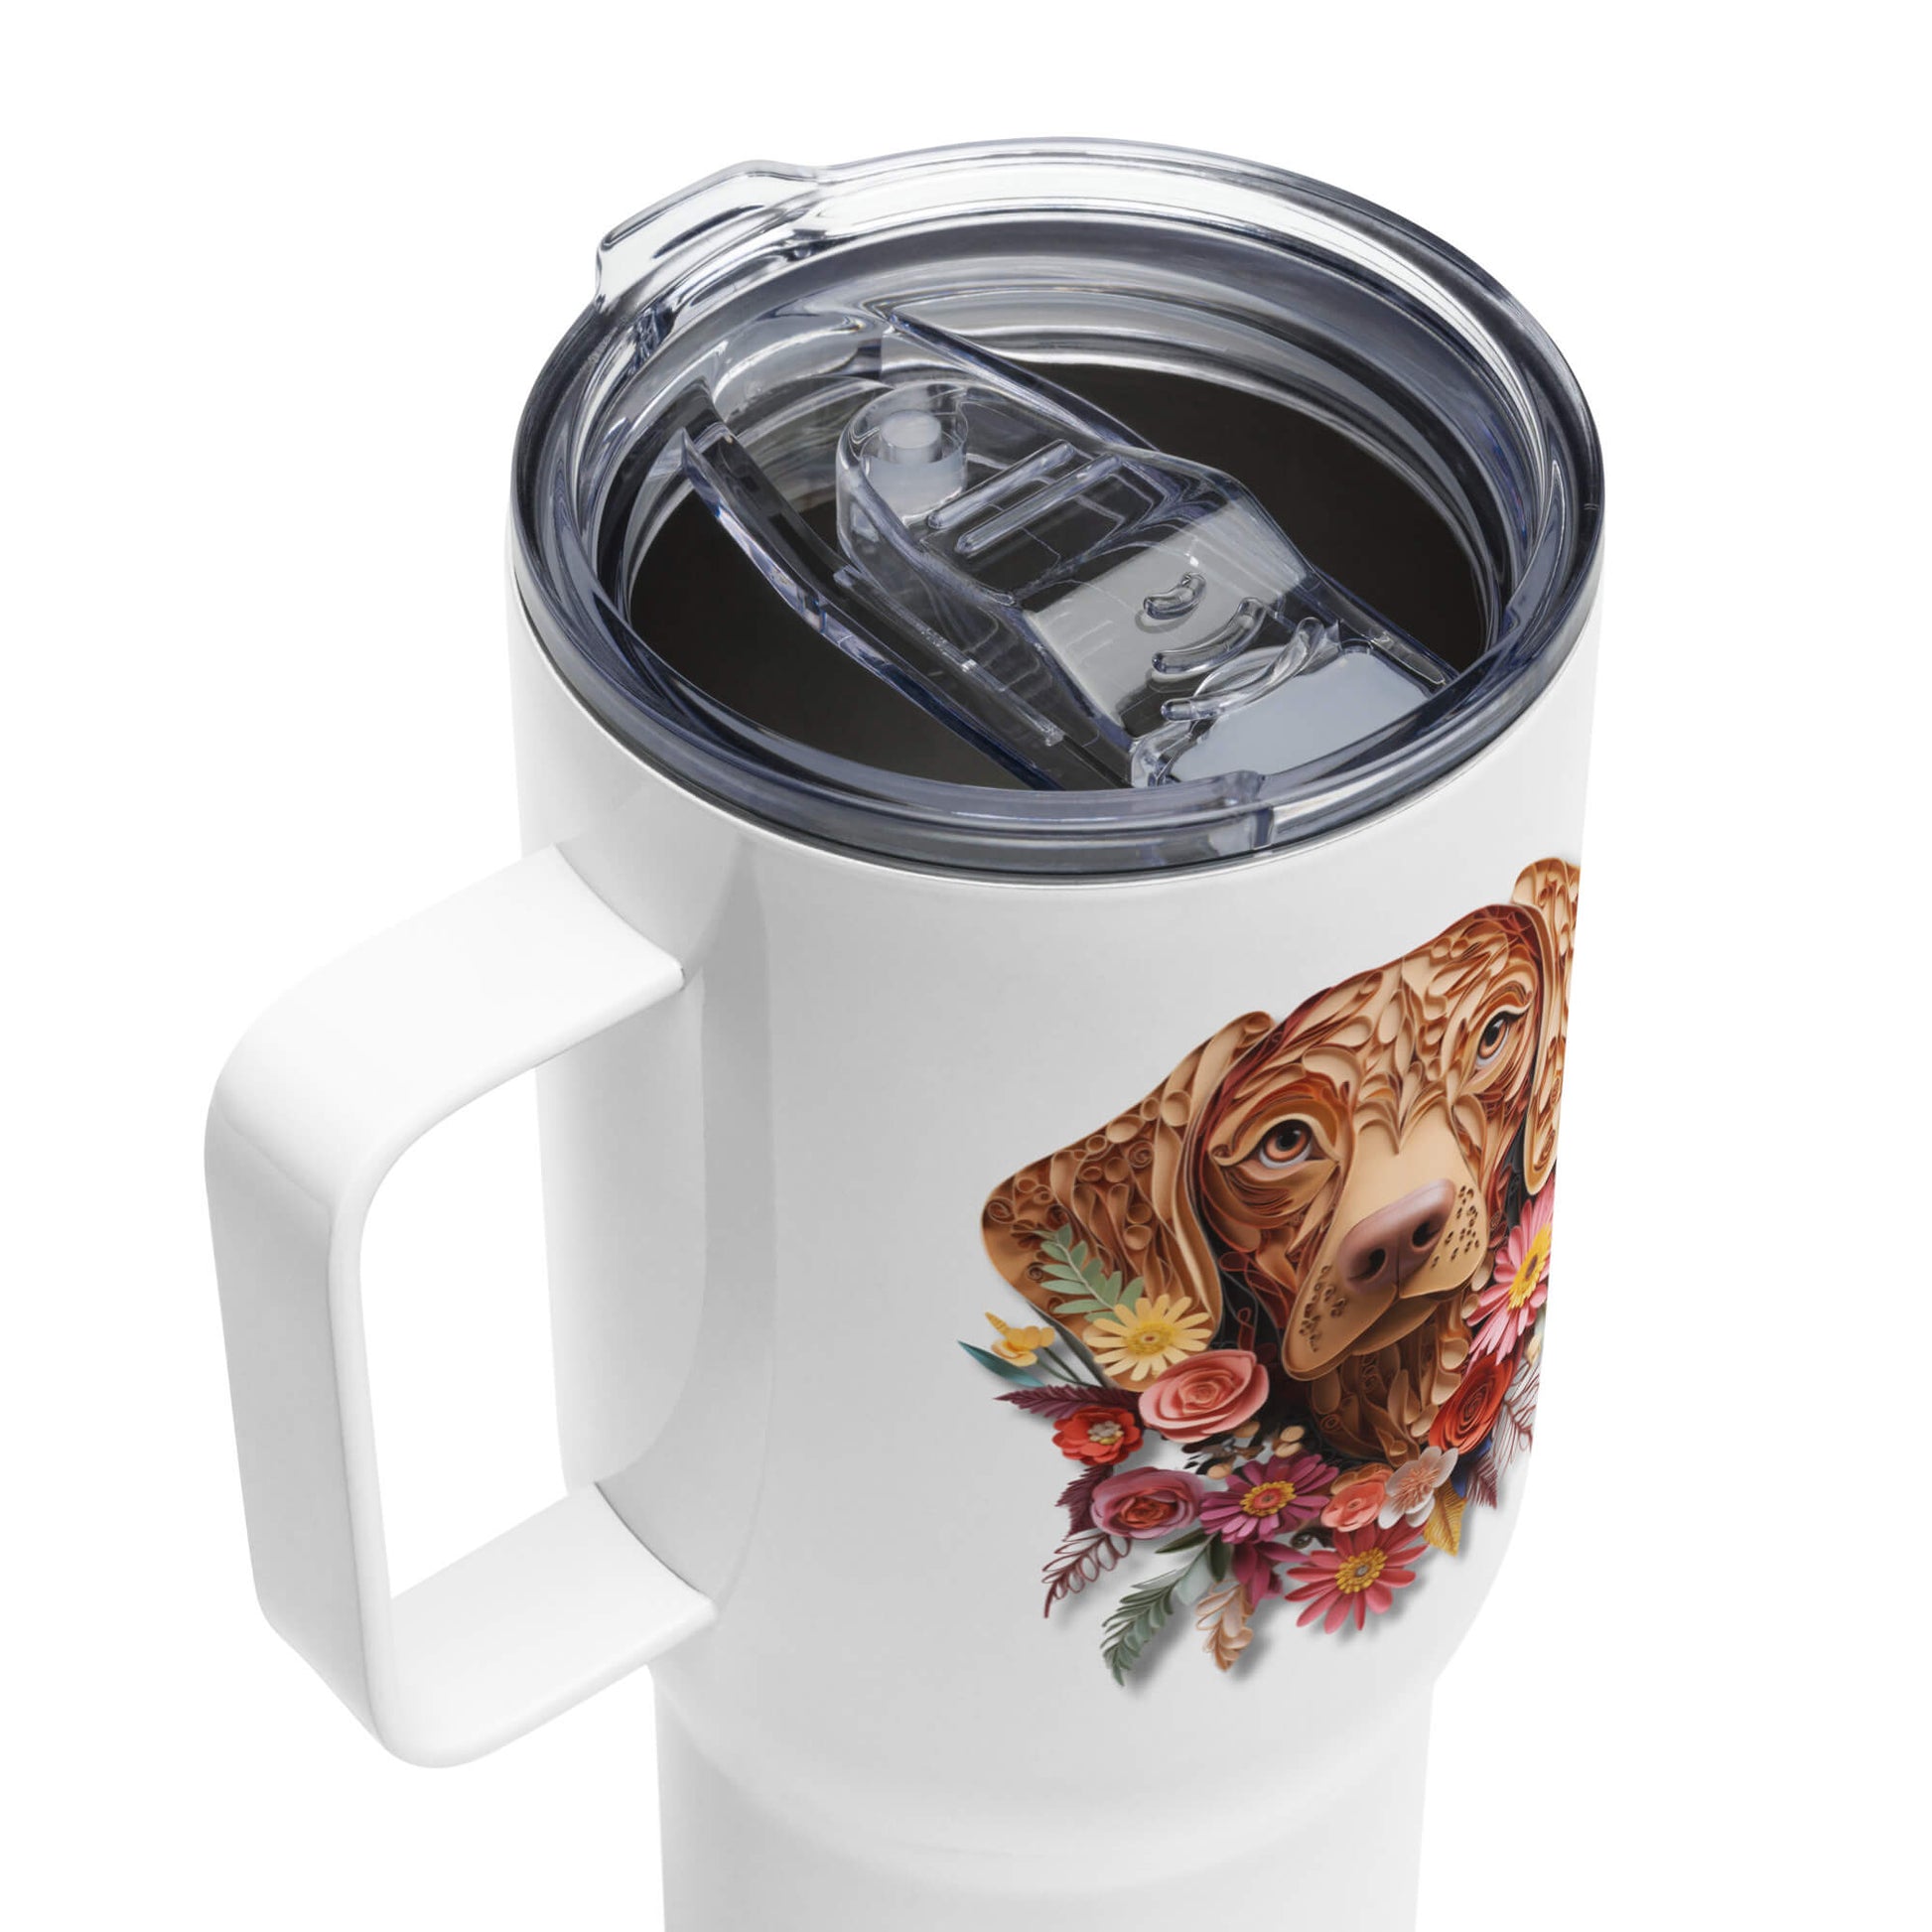 25oz Travel Mug with a Handle - Vizsla Paper Quilling Design - Hobbster